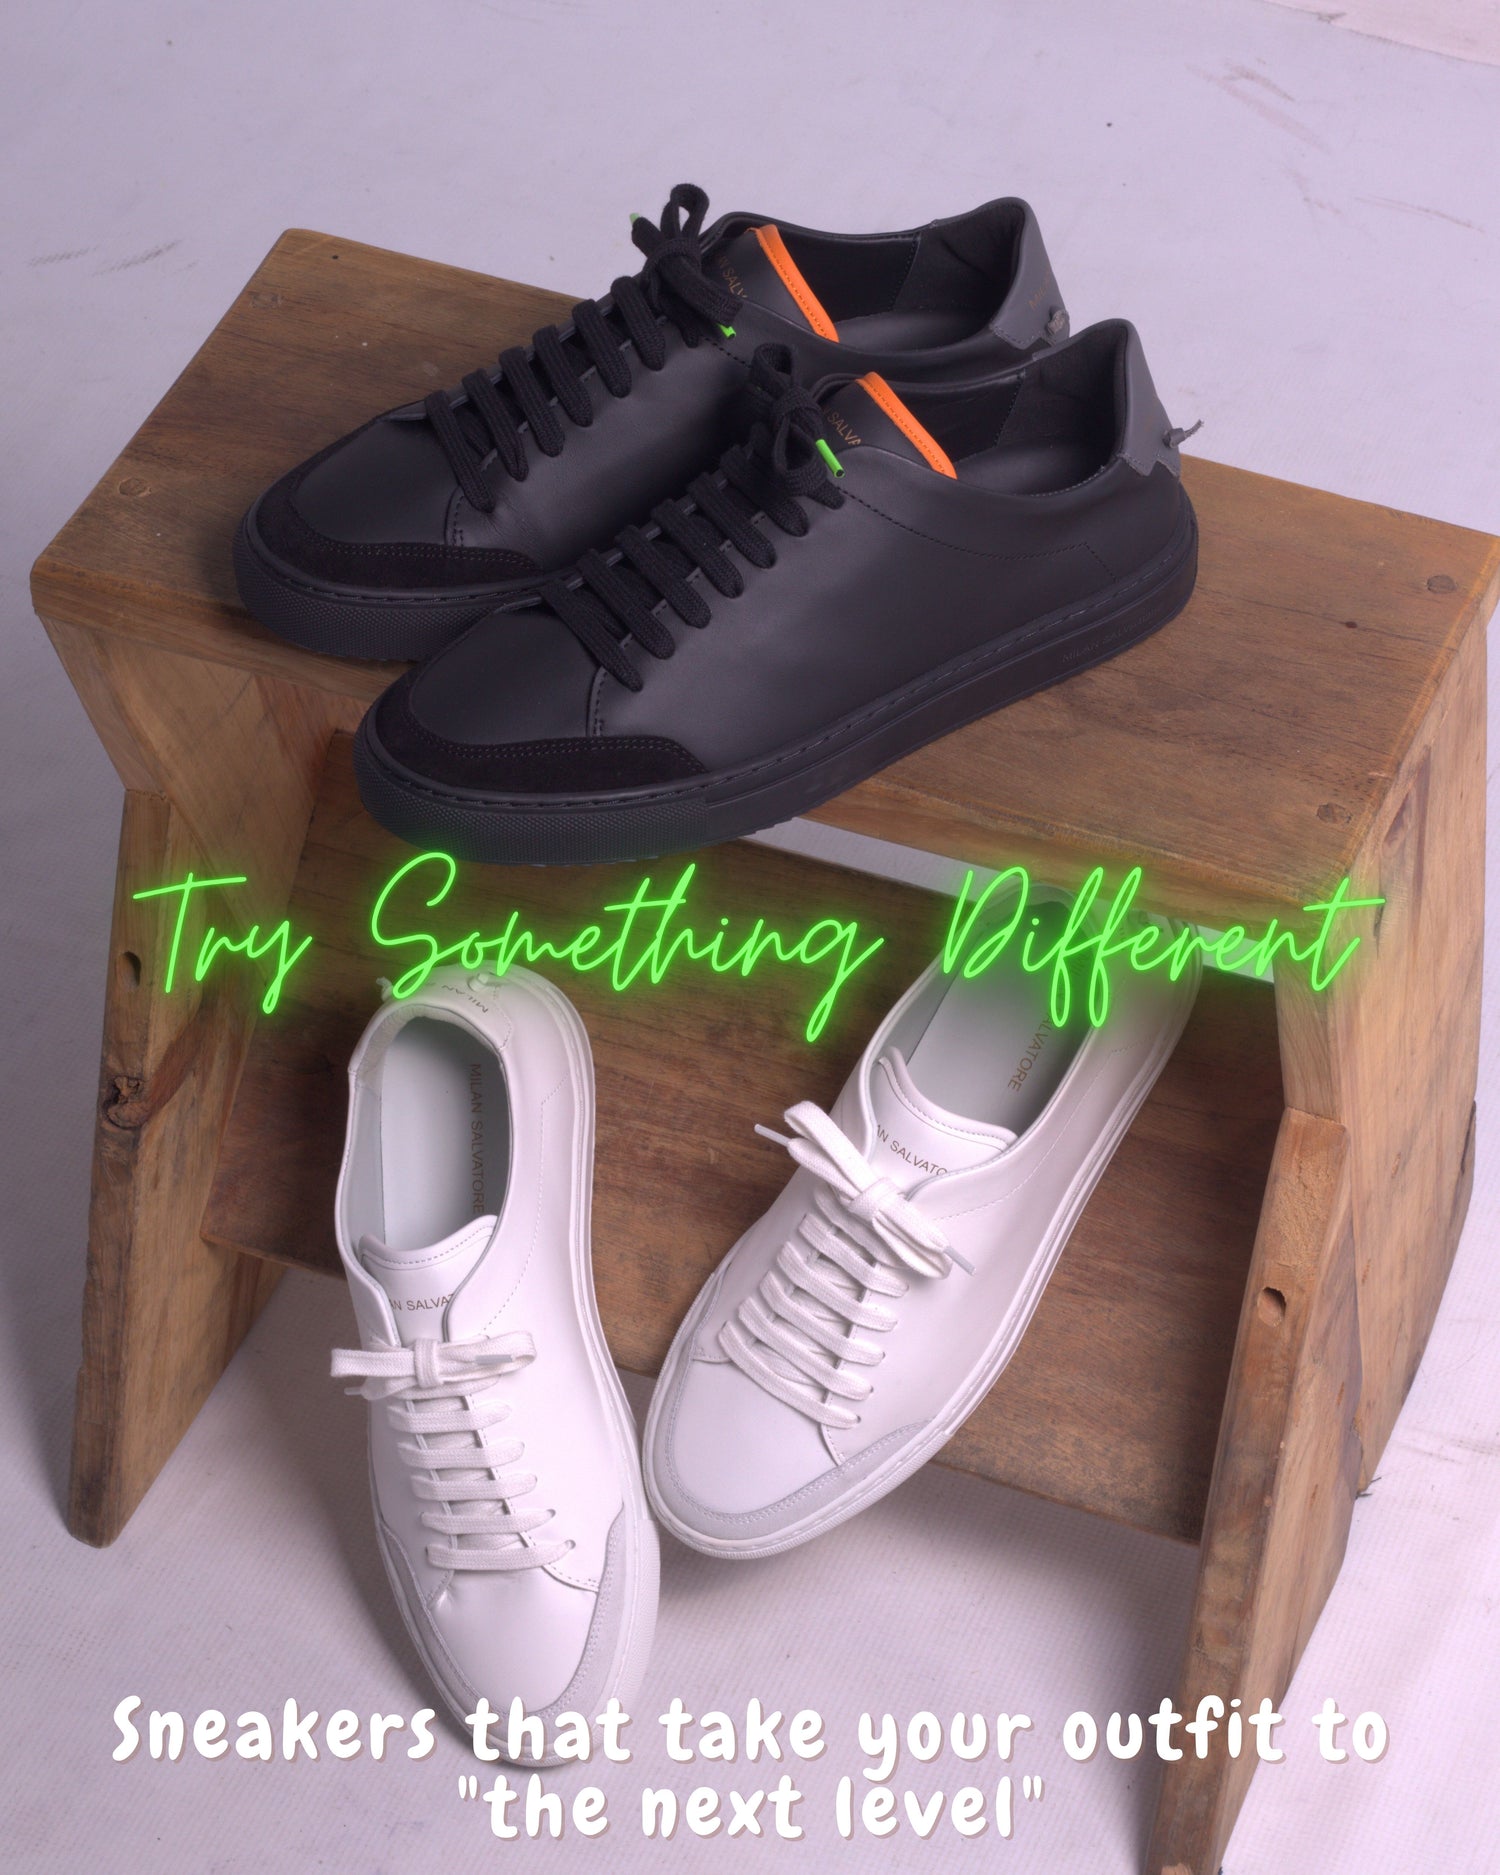  Milan Salvatore - Zapatillas negras para hombre para uso diario   Zapatos deportivos negros para hombre - Zapatos clásicos de cuero  italiano premium para caminar y zapatos deportivos casuales de moda